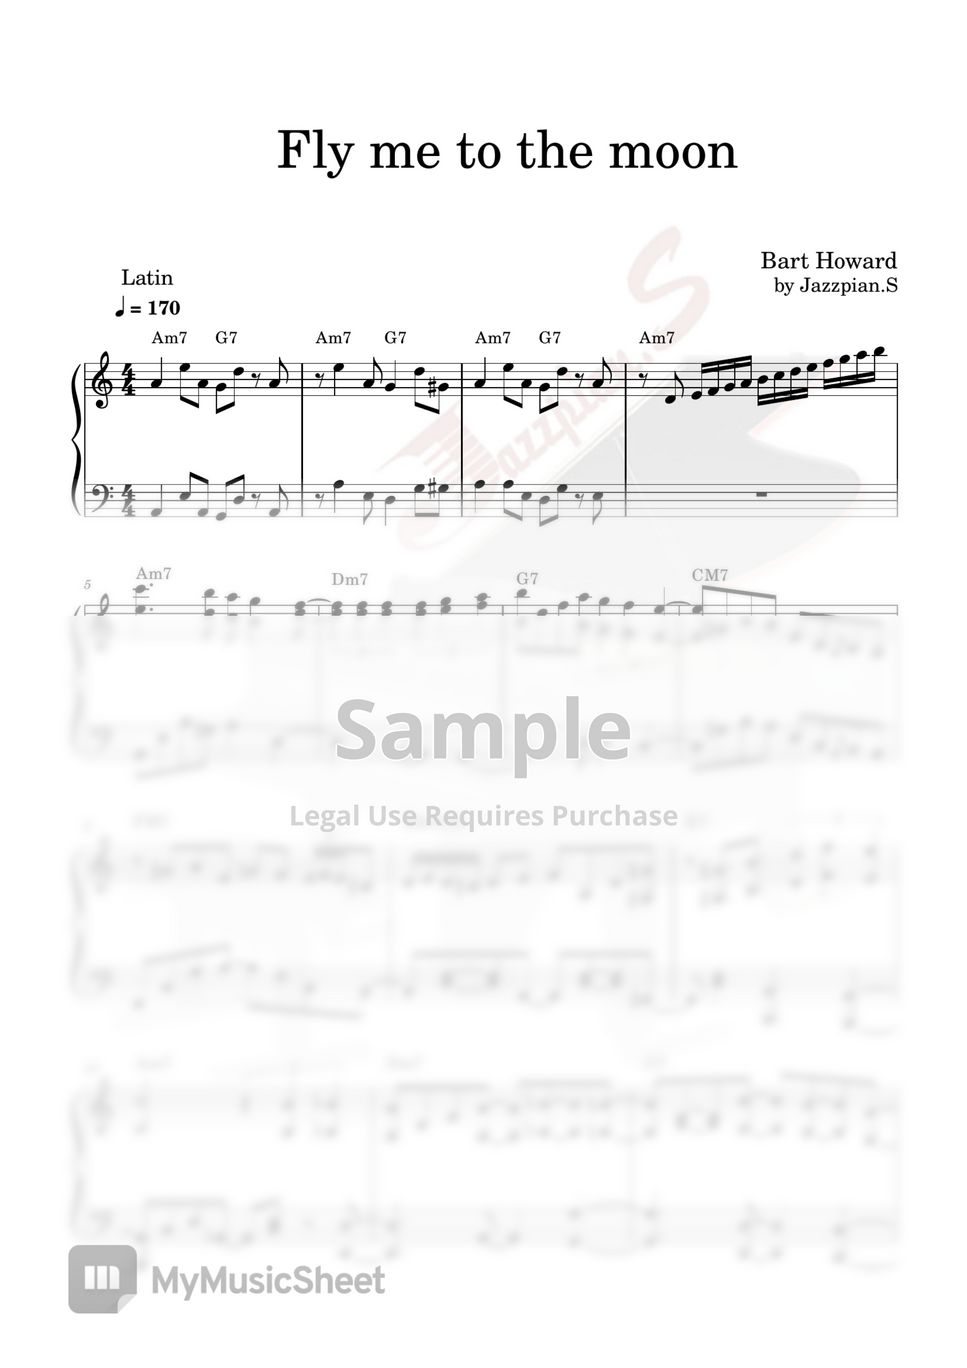 Bart Howard - Fly me to the moon (Latin jazz piano) by Jazzpian.S